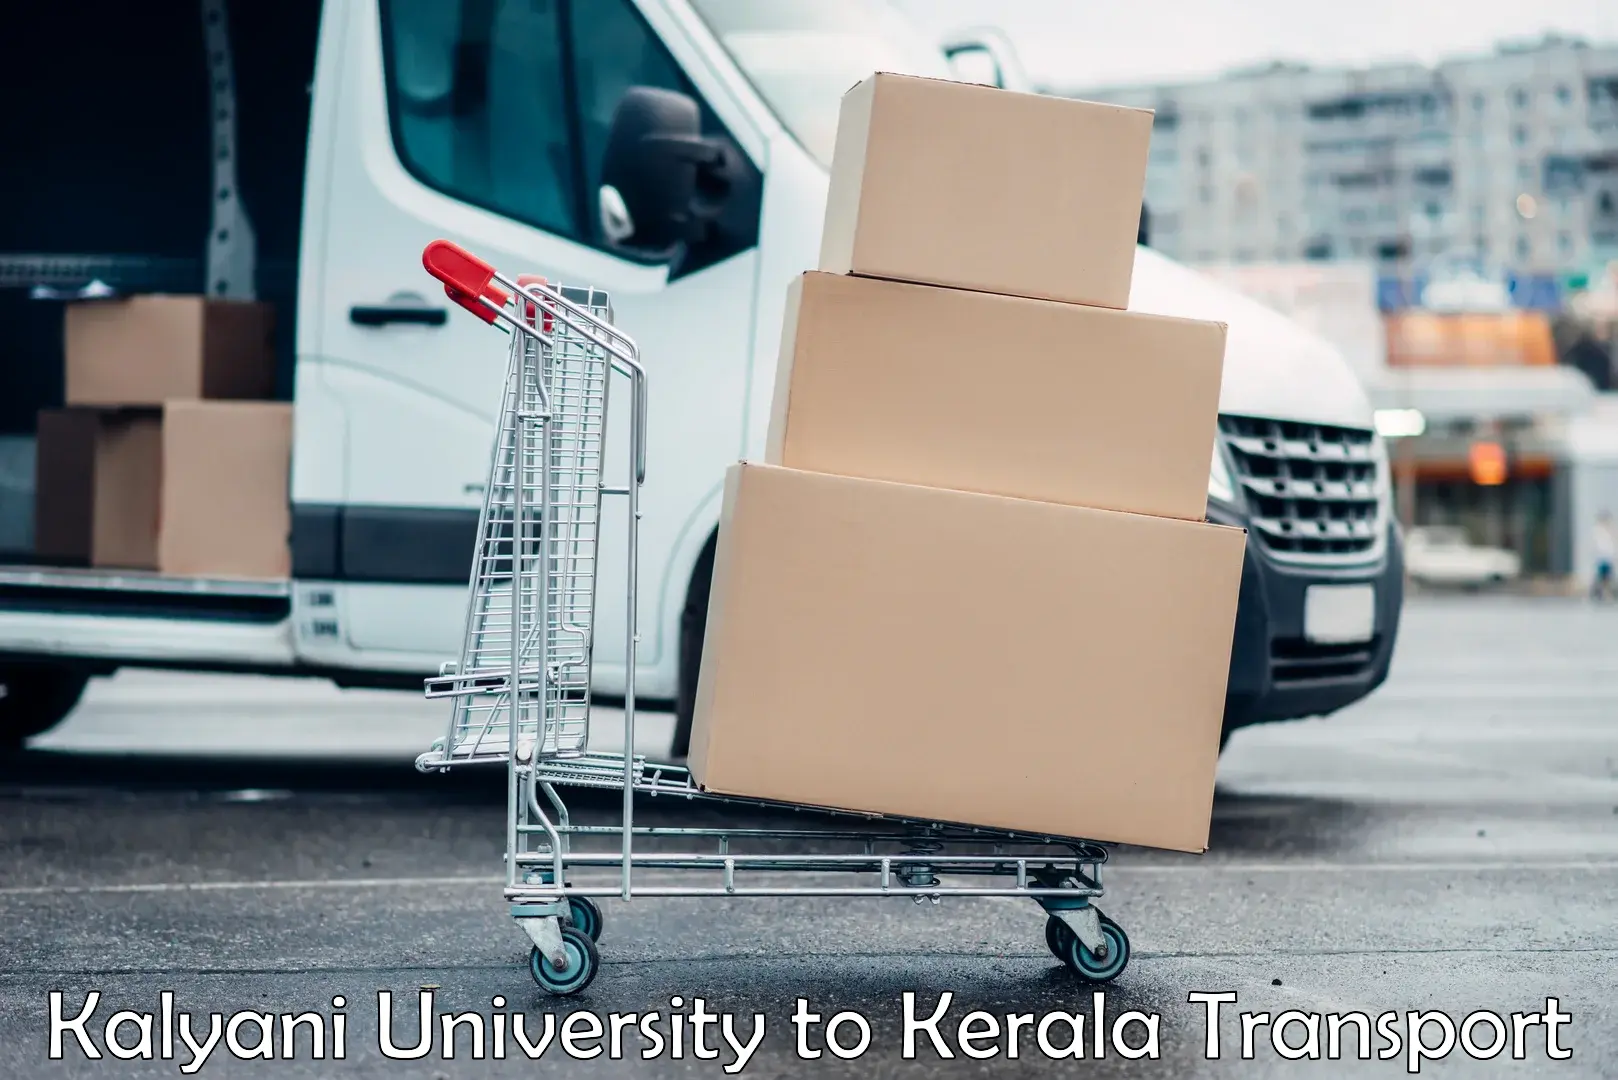 Furniture transport service Kalyani University to Nallepilly